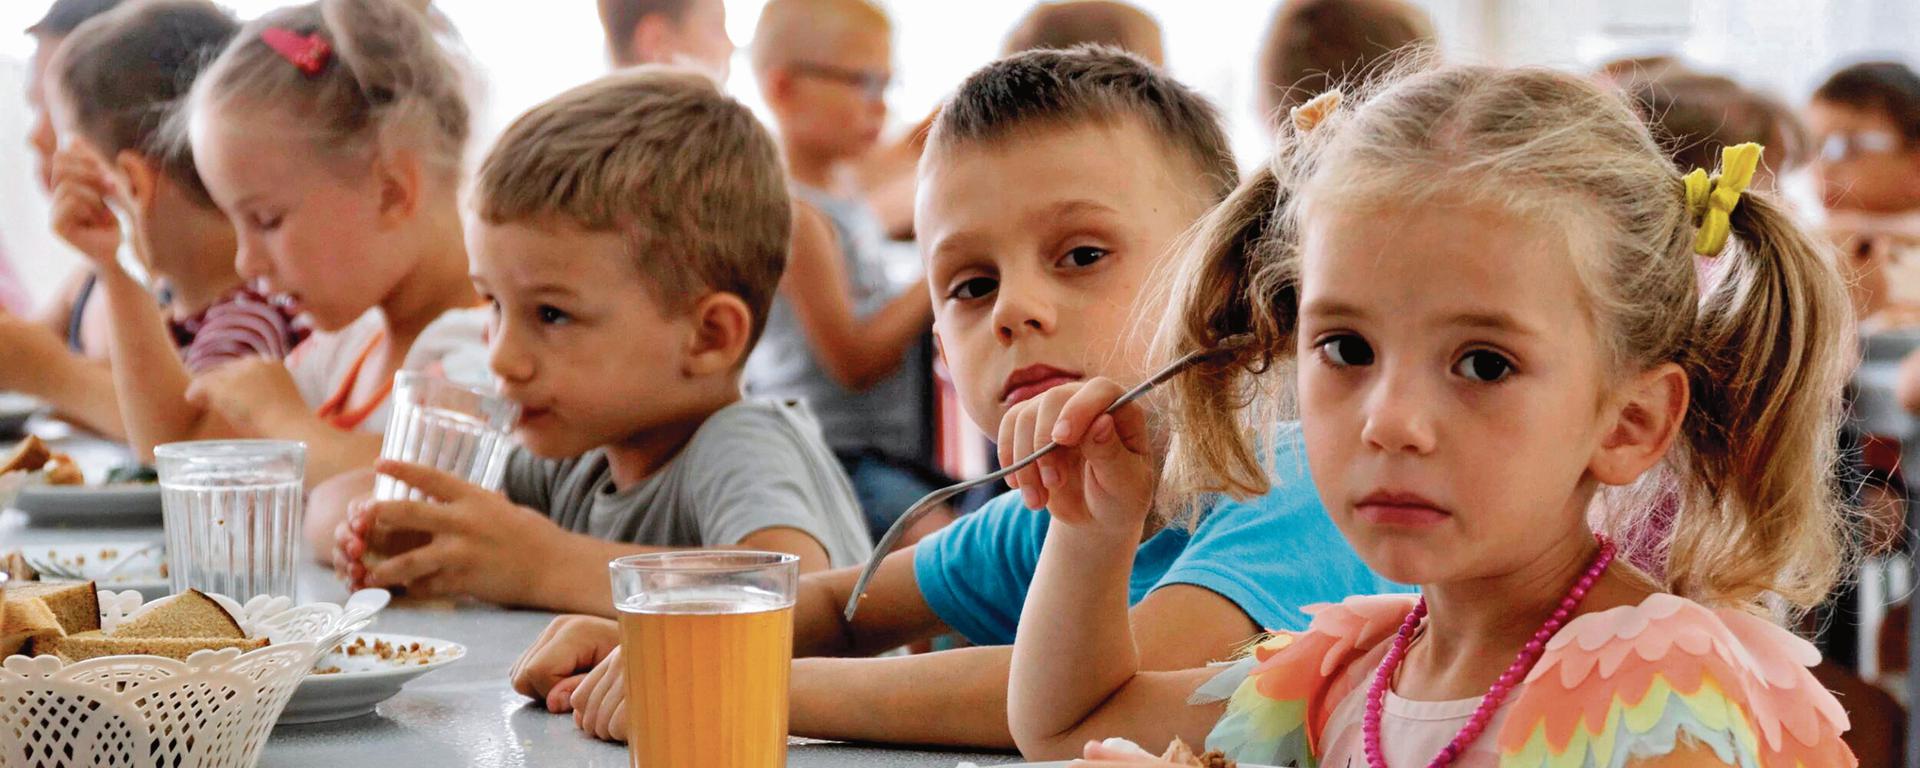 El drama de los niños ucranianos: ¿rescatados de la guerra o usados como botín?